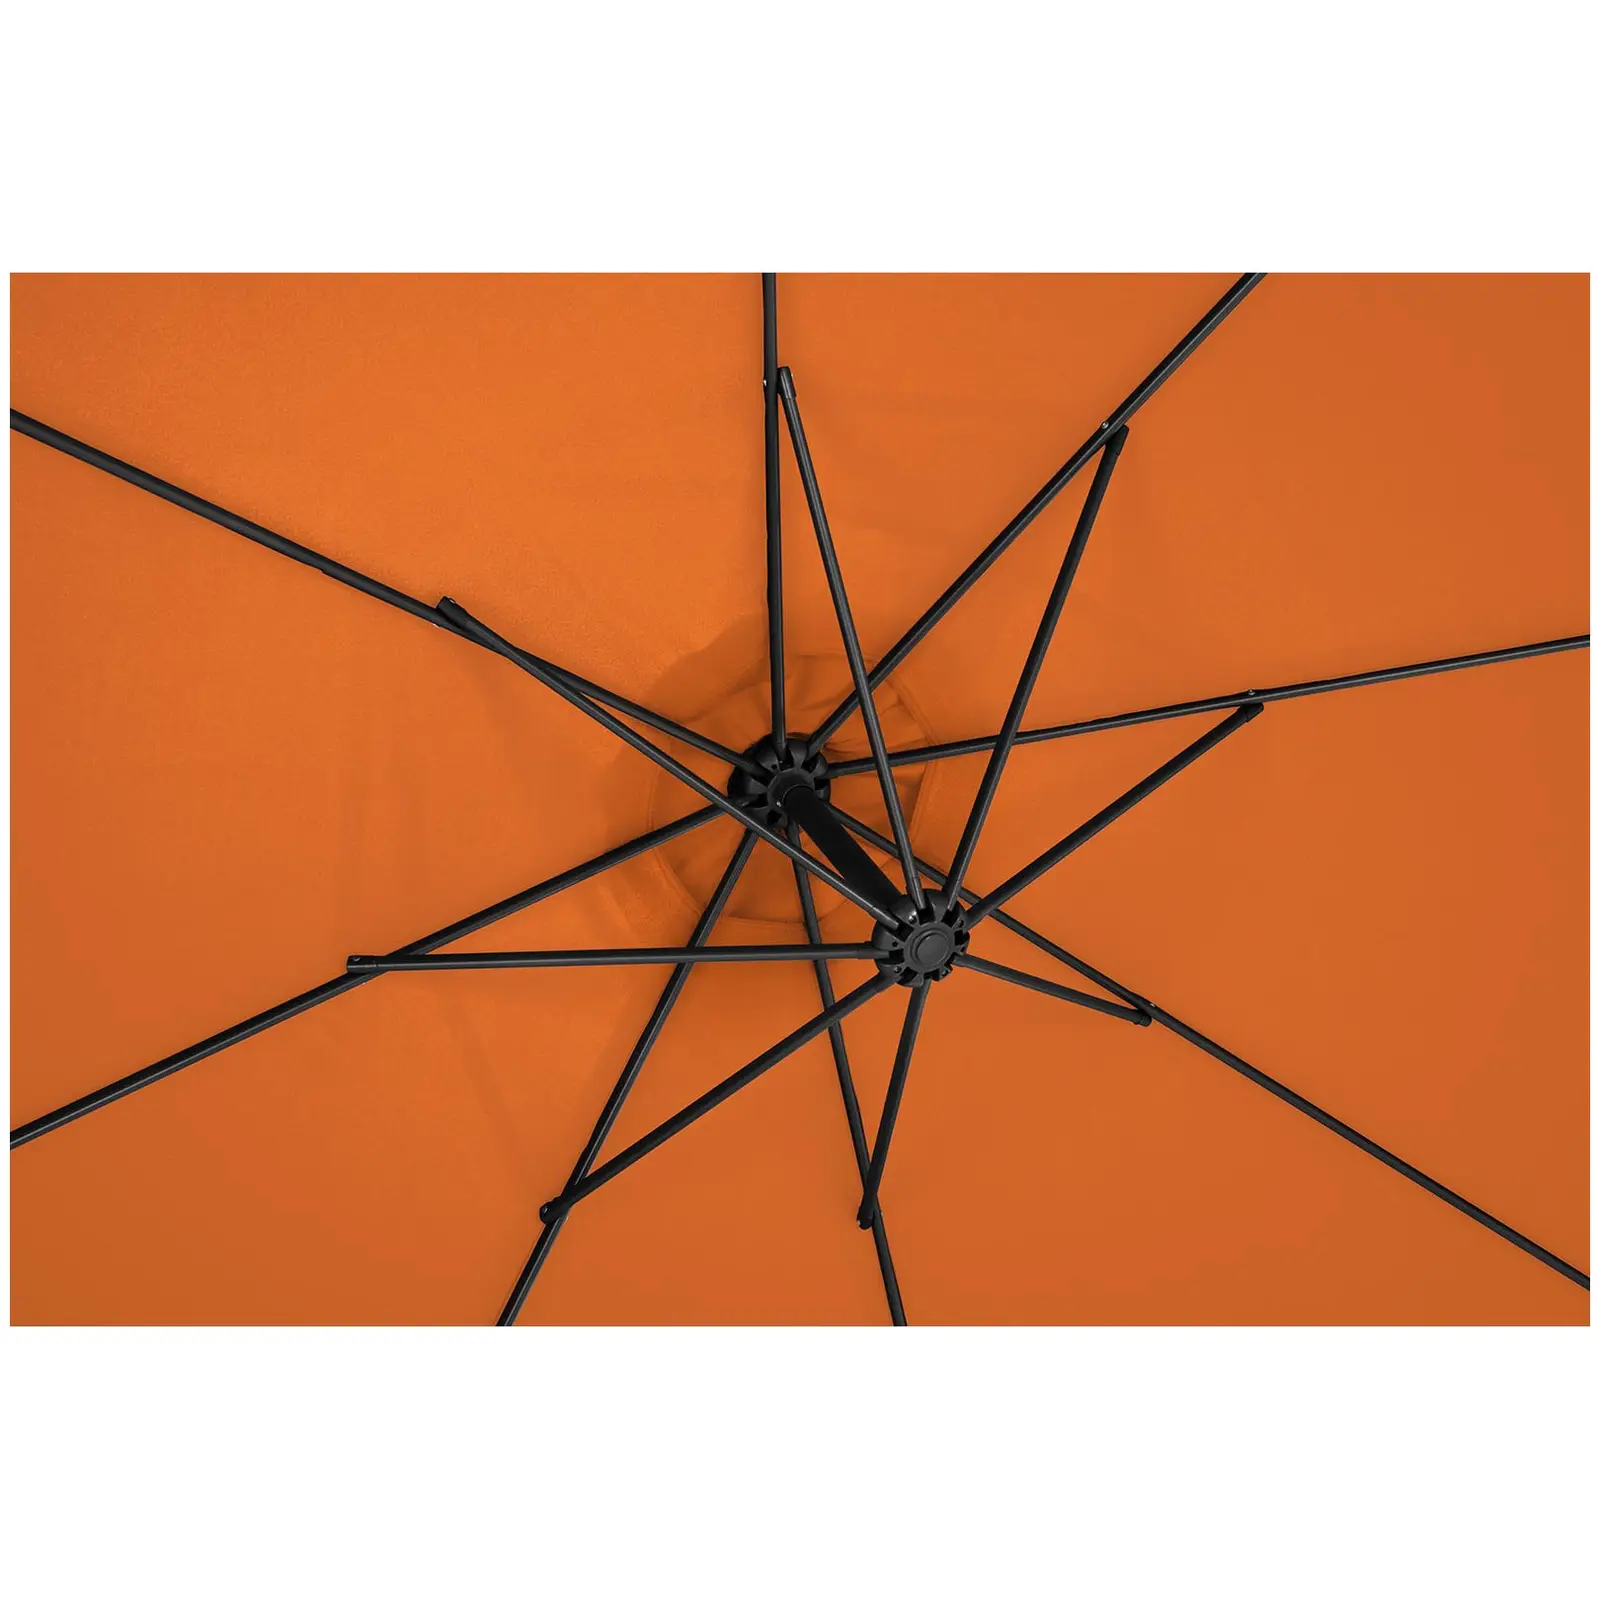 Brugt Hængeparasol - orange - rund - 300 cm i diameter